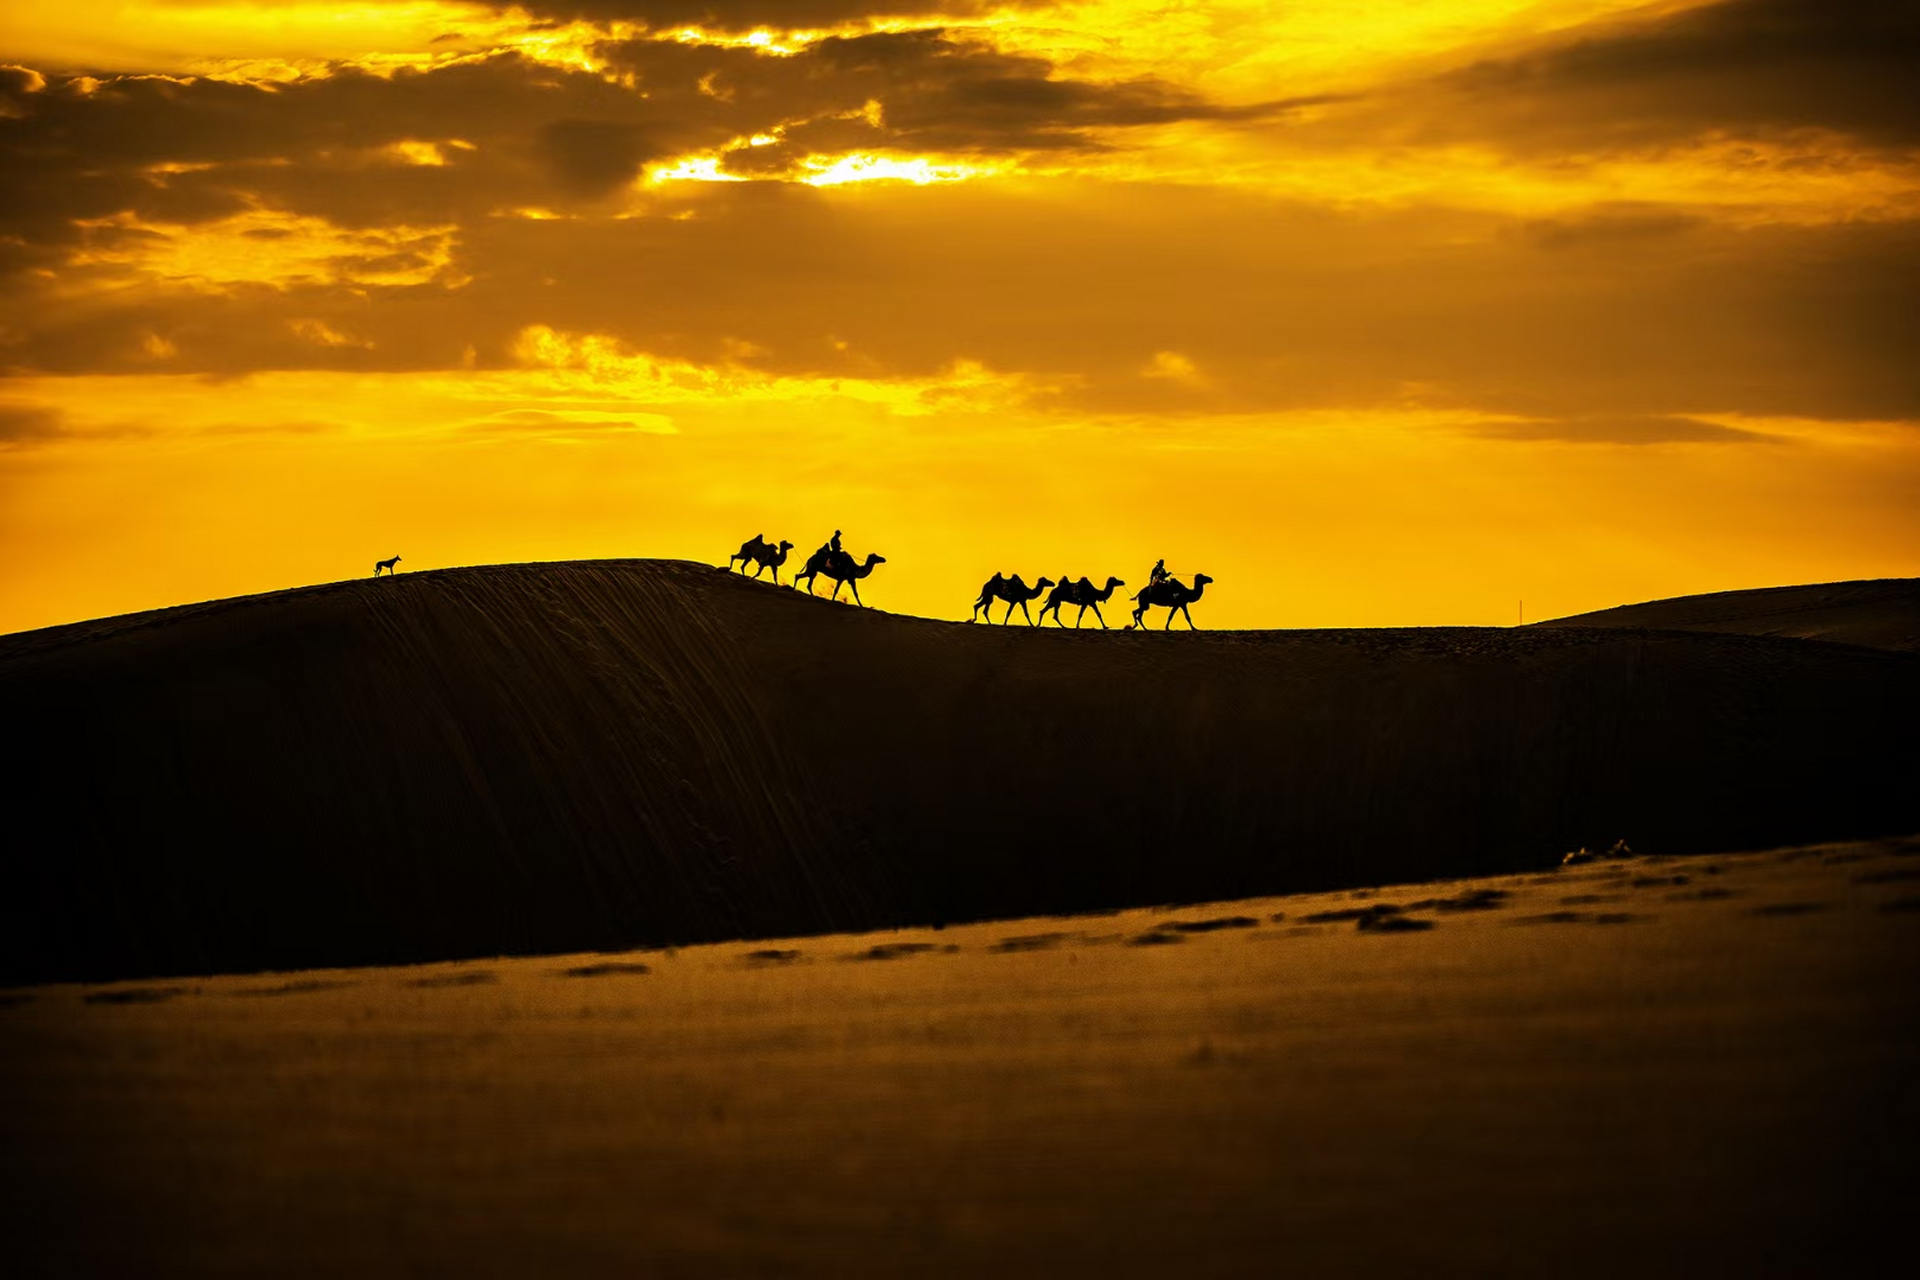 宝古图沙漠生态环境保护最好的一片沙漠,同时也是我国东北地区最大的